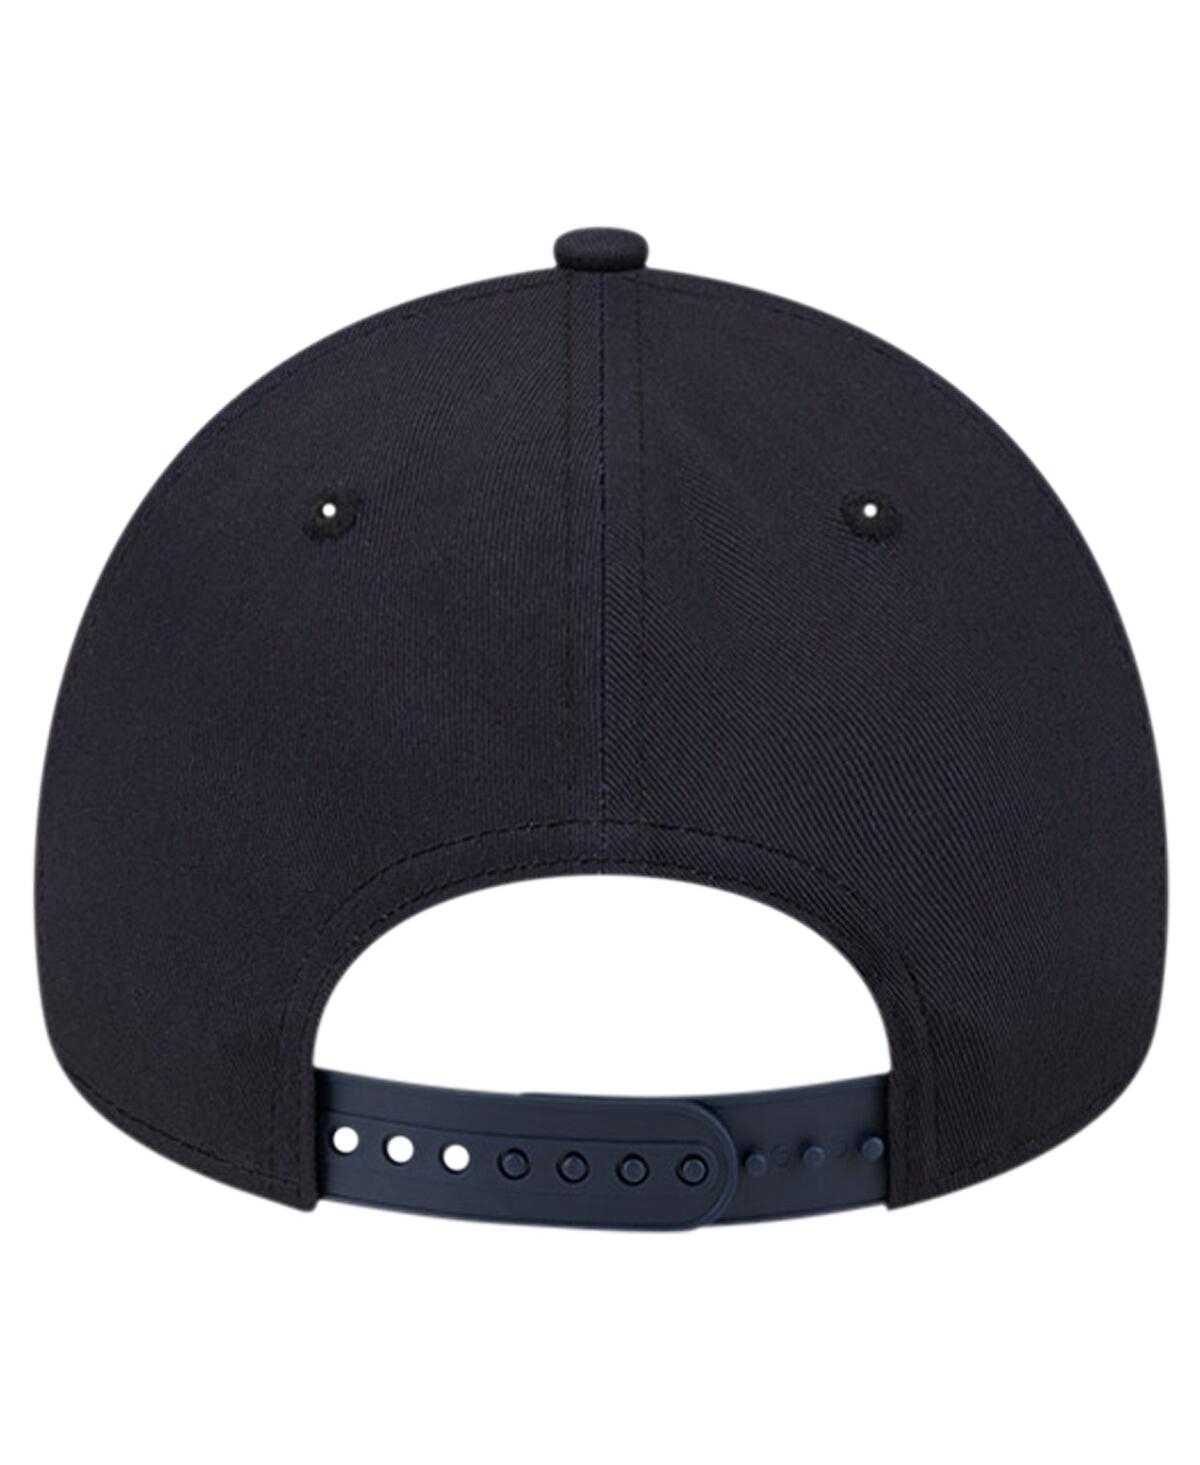 Shop New Era Men's Navy Minnesota Twins Team Color A-frame 9forty Adjustable Hat